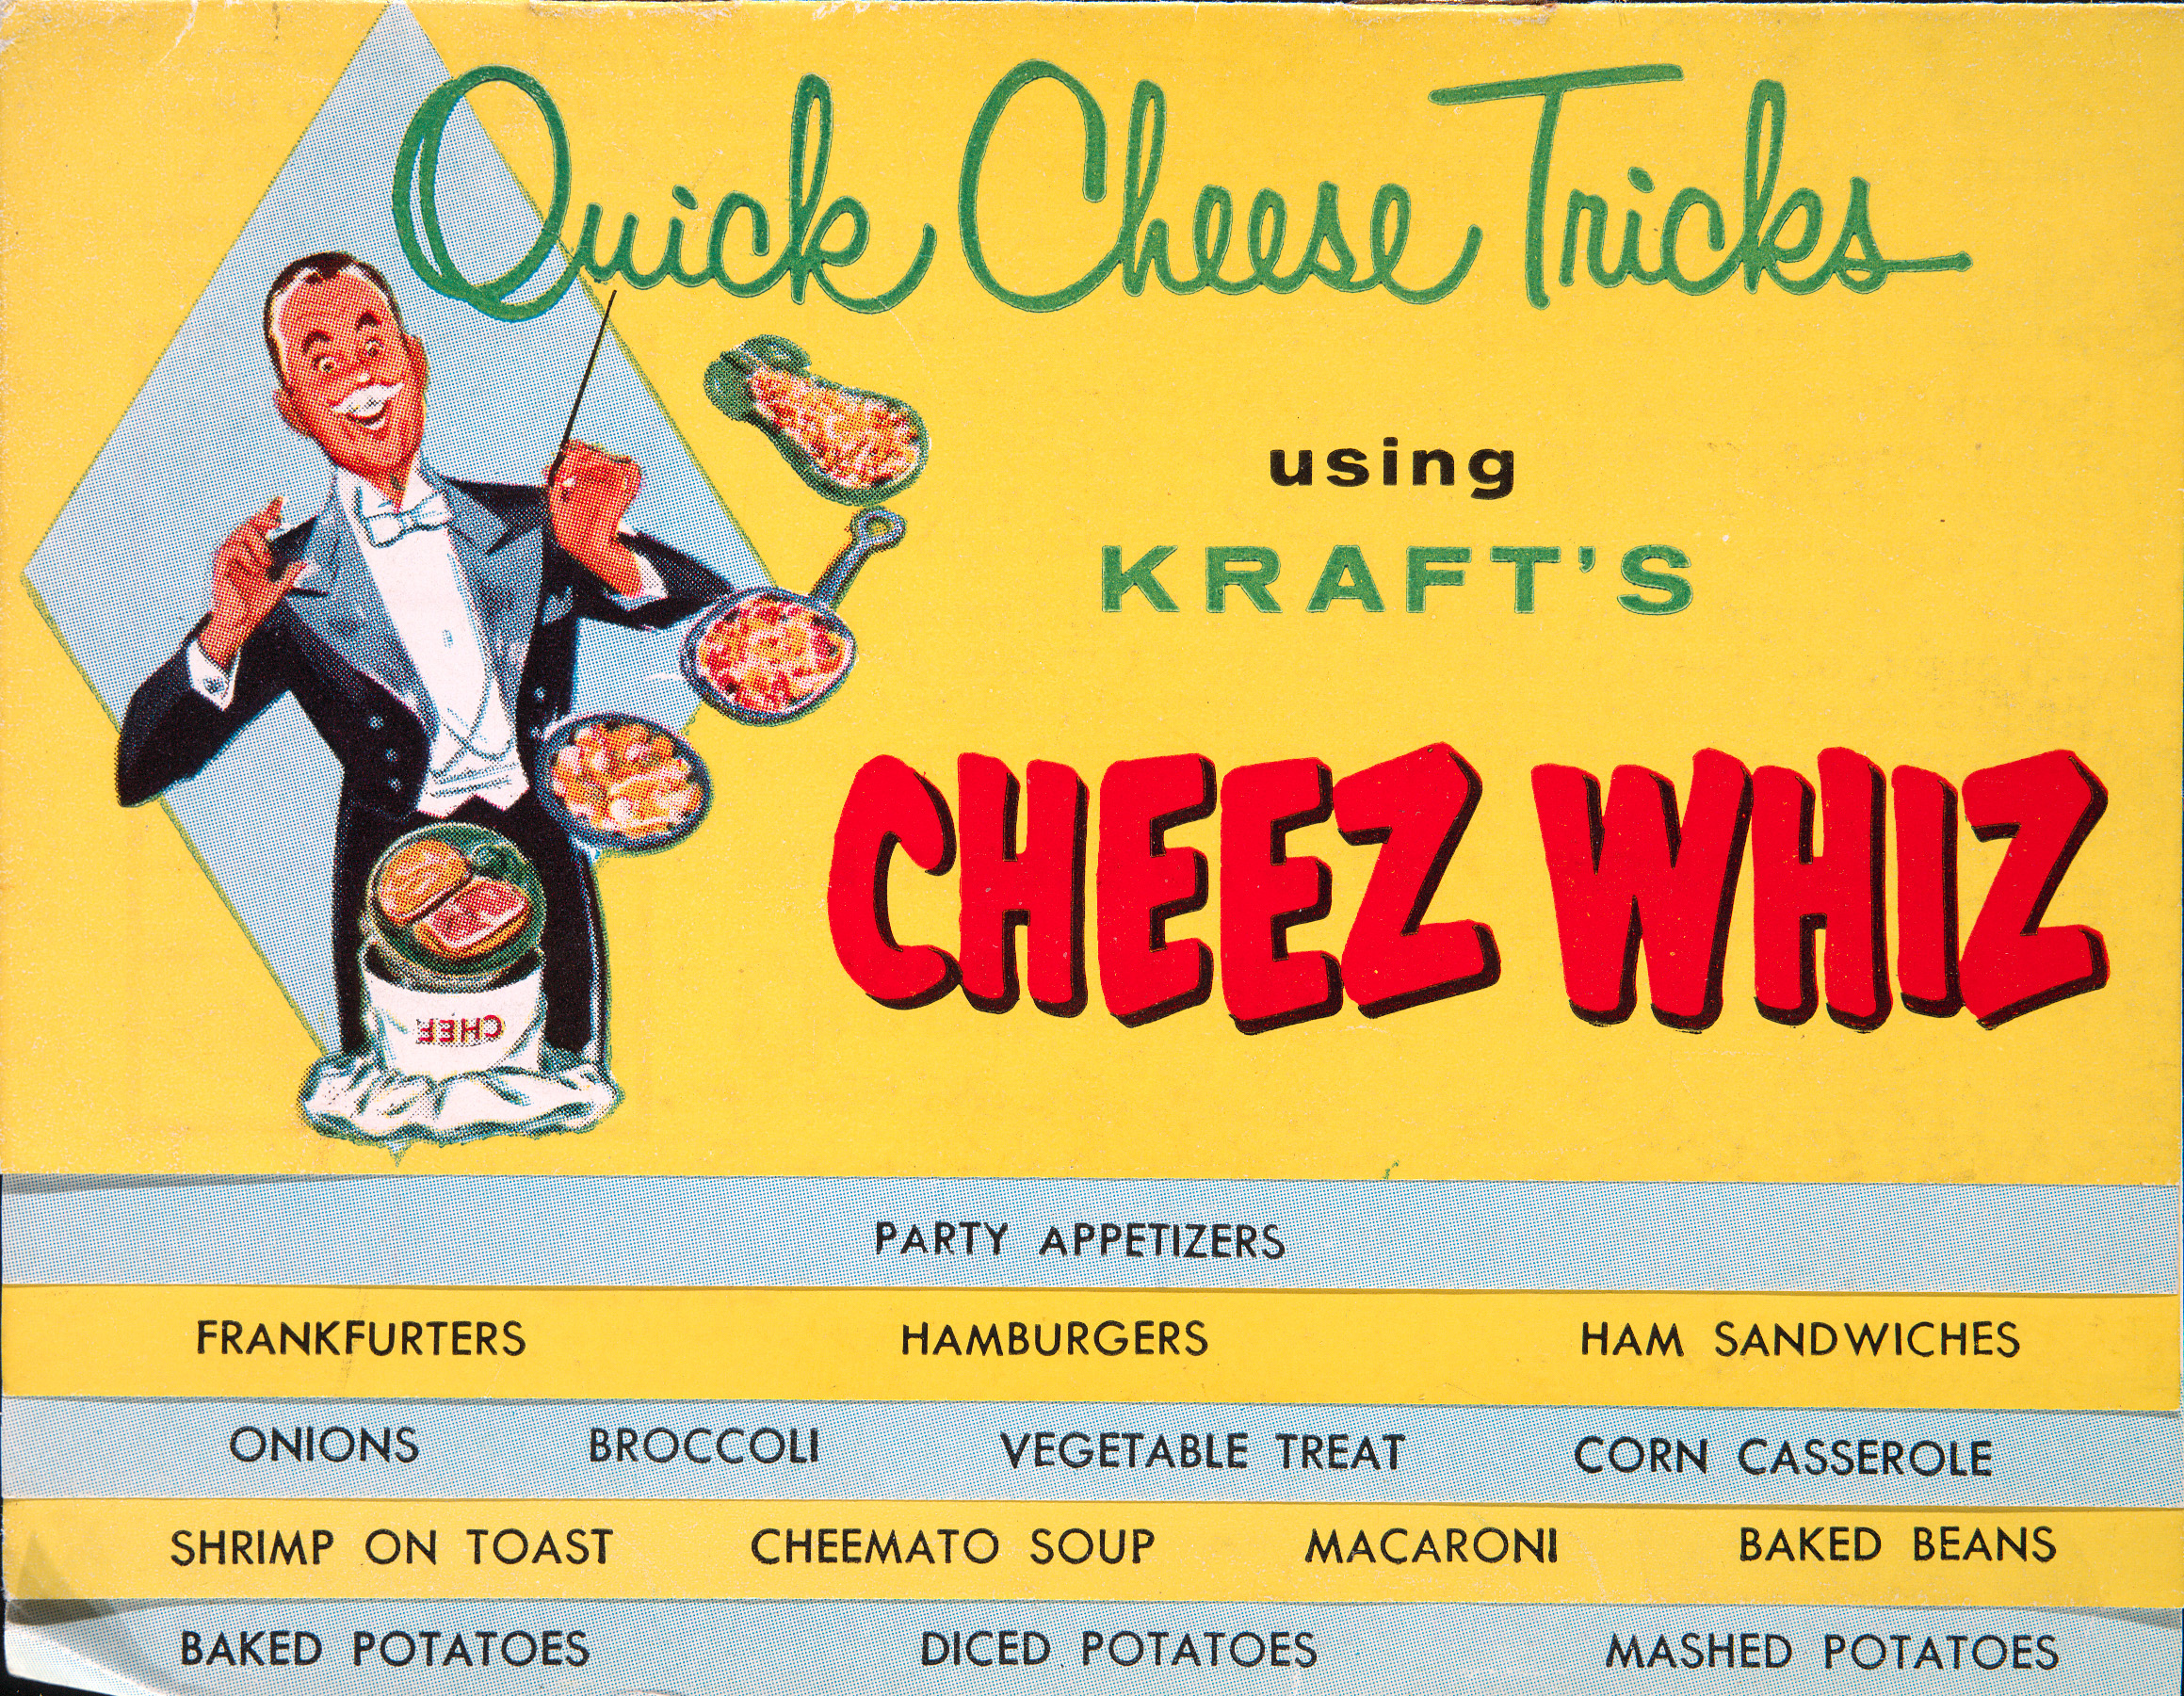 Quick Cheese Tricks Using Kraft’s Cheez Whiz. 